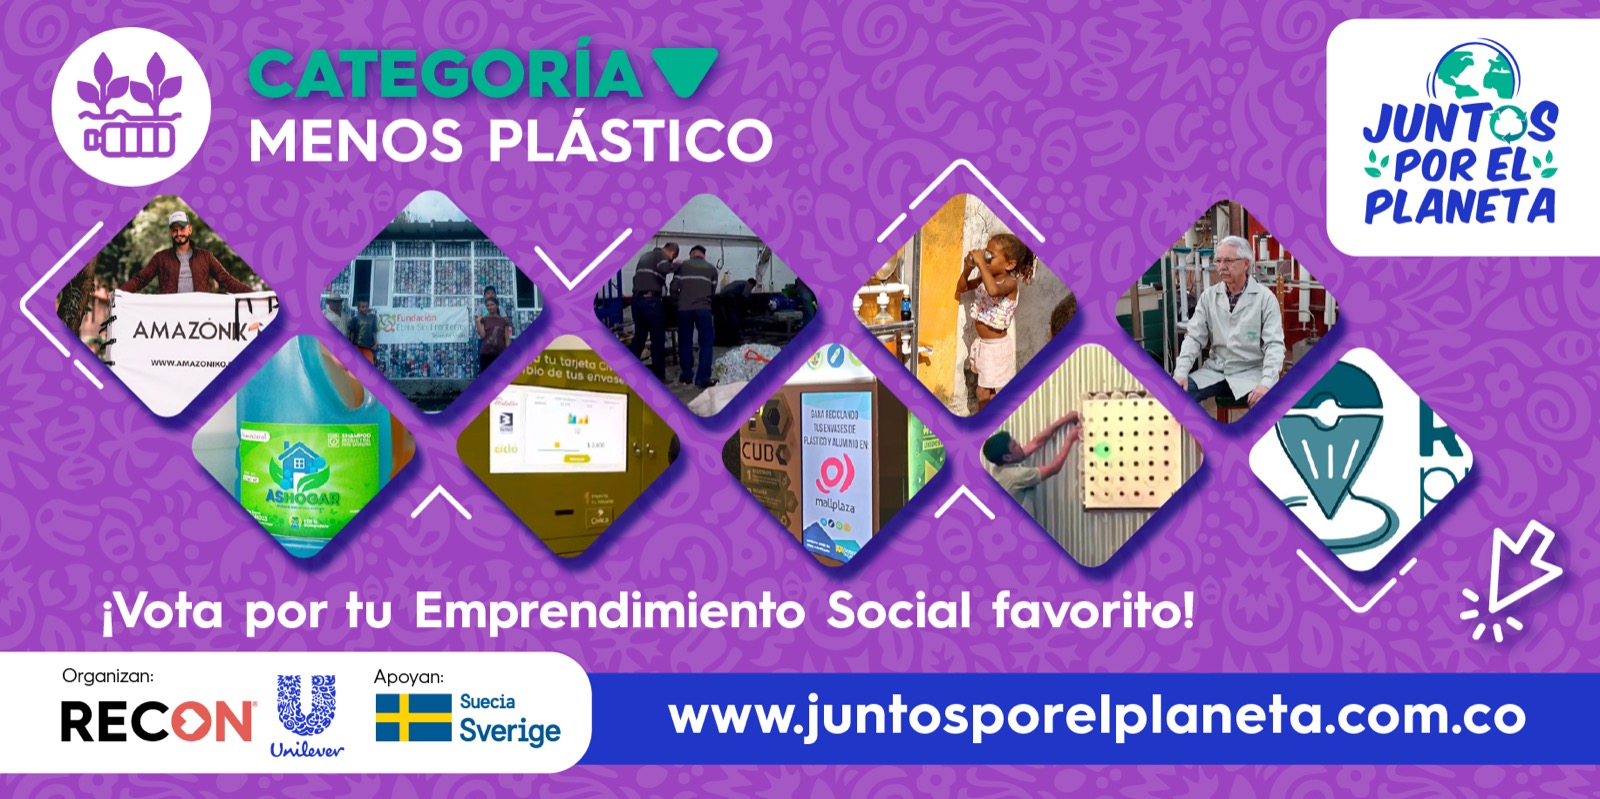 Los 10 Emprendimientos Sociales de la categoría MENOS plástico